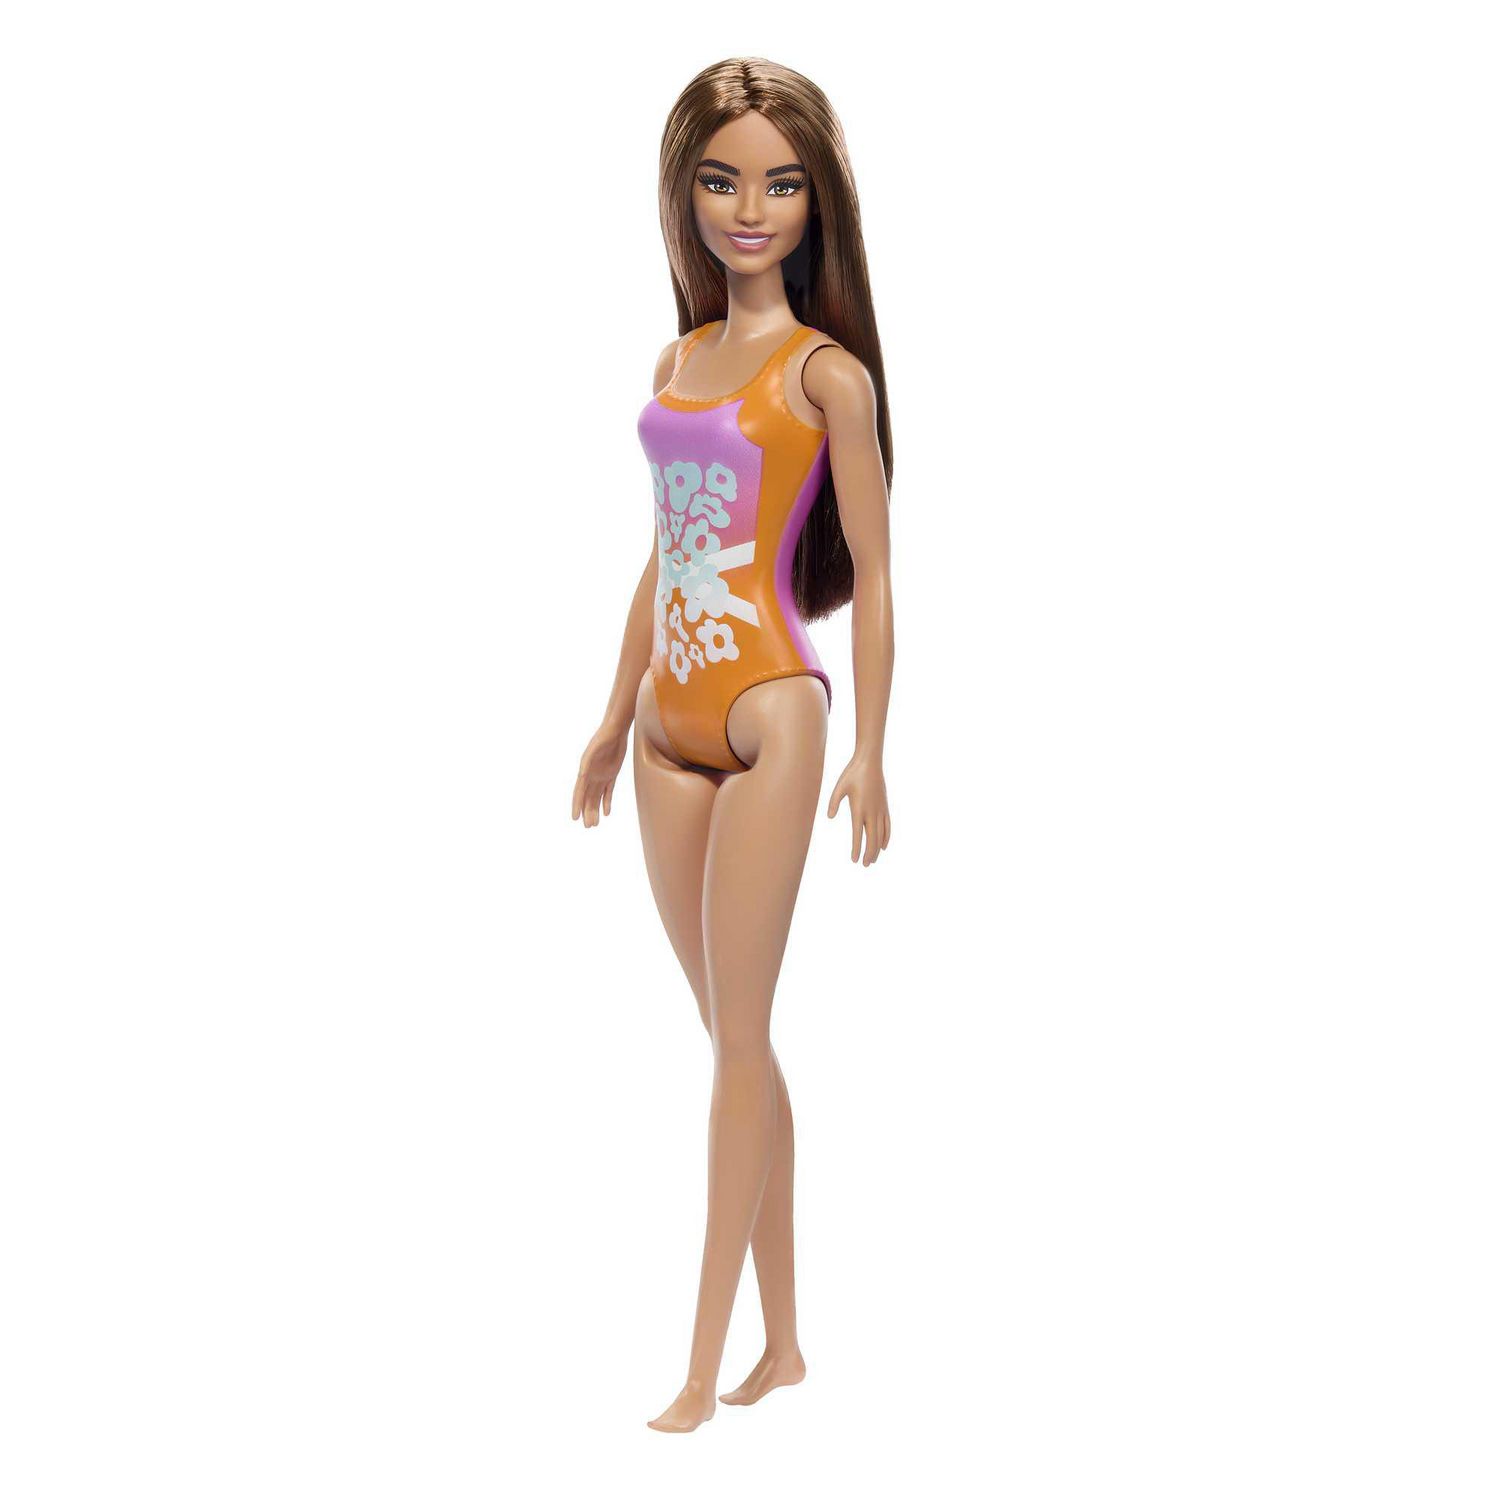 Barbie – Poupée Plage – Cheveux brun clair, maillot rose et orange